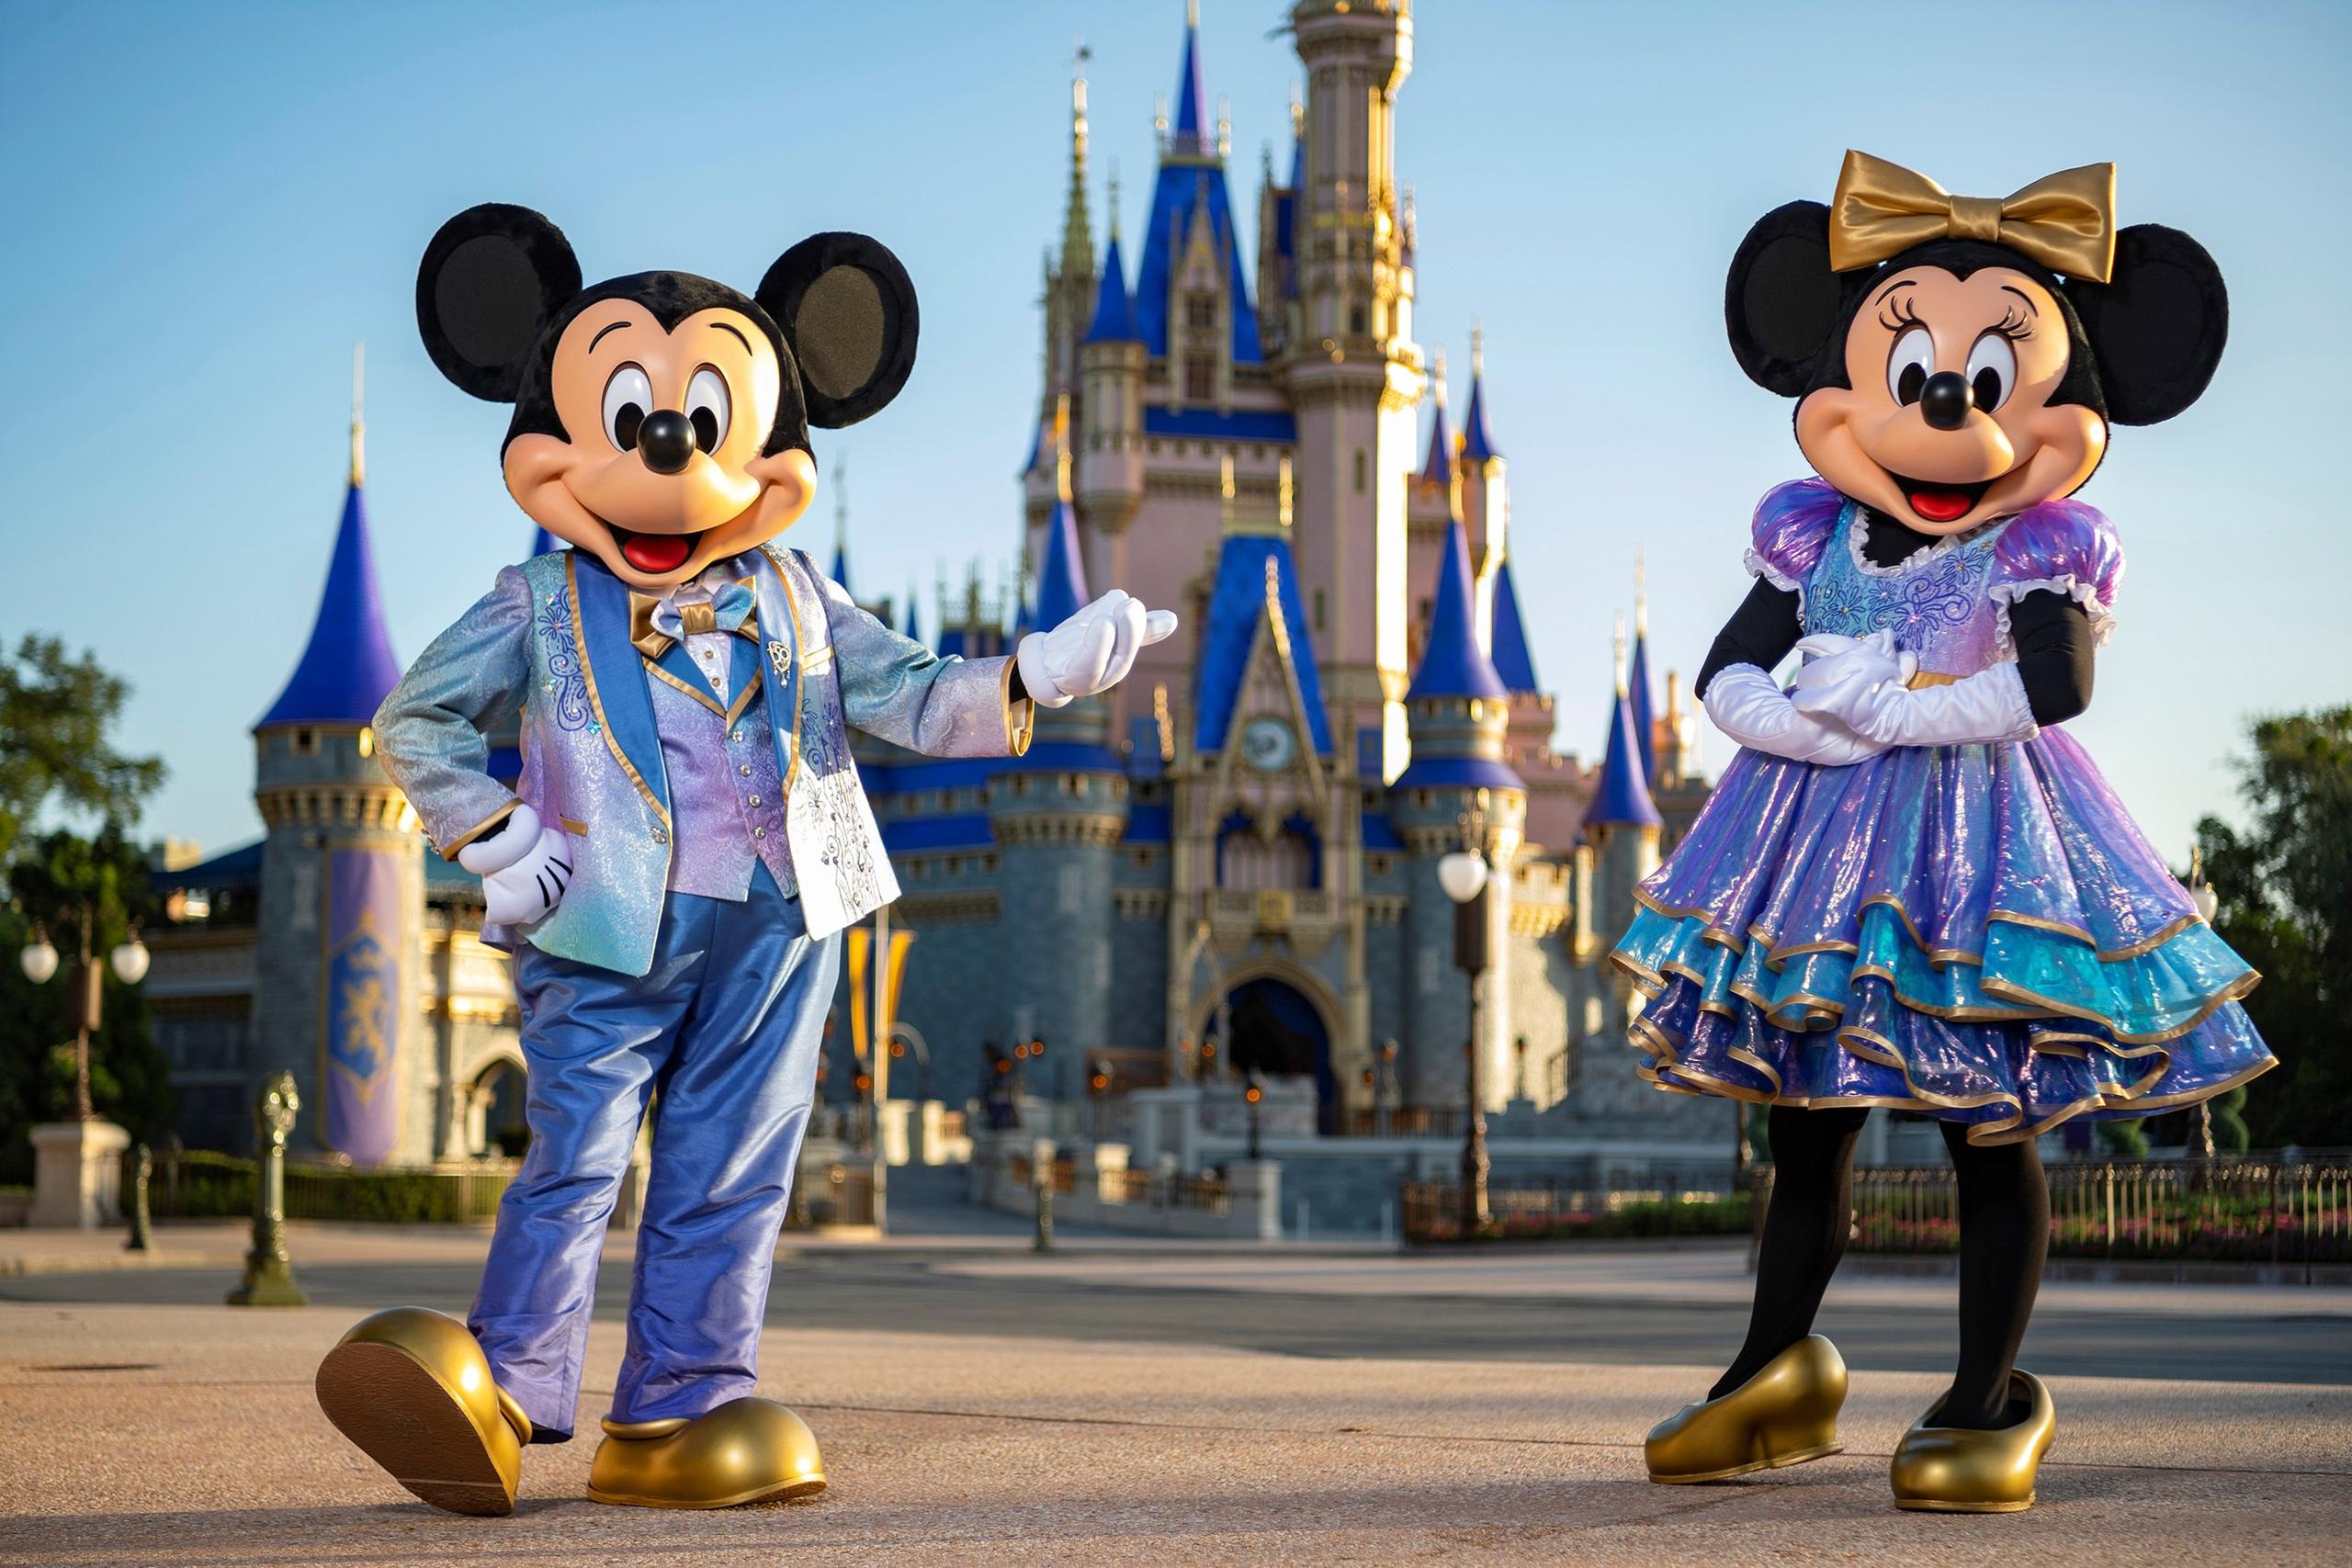 La celebración del cincuentenario de Disney World tendrá como anfitriones a los personajes de Walt Disney Micky Mouse, Minnie Mouse y sus amigos, que vestirán “nuevos atuendos” para esta ocasión.